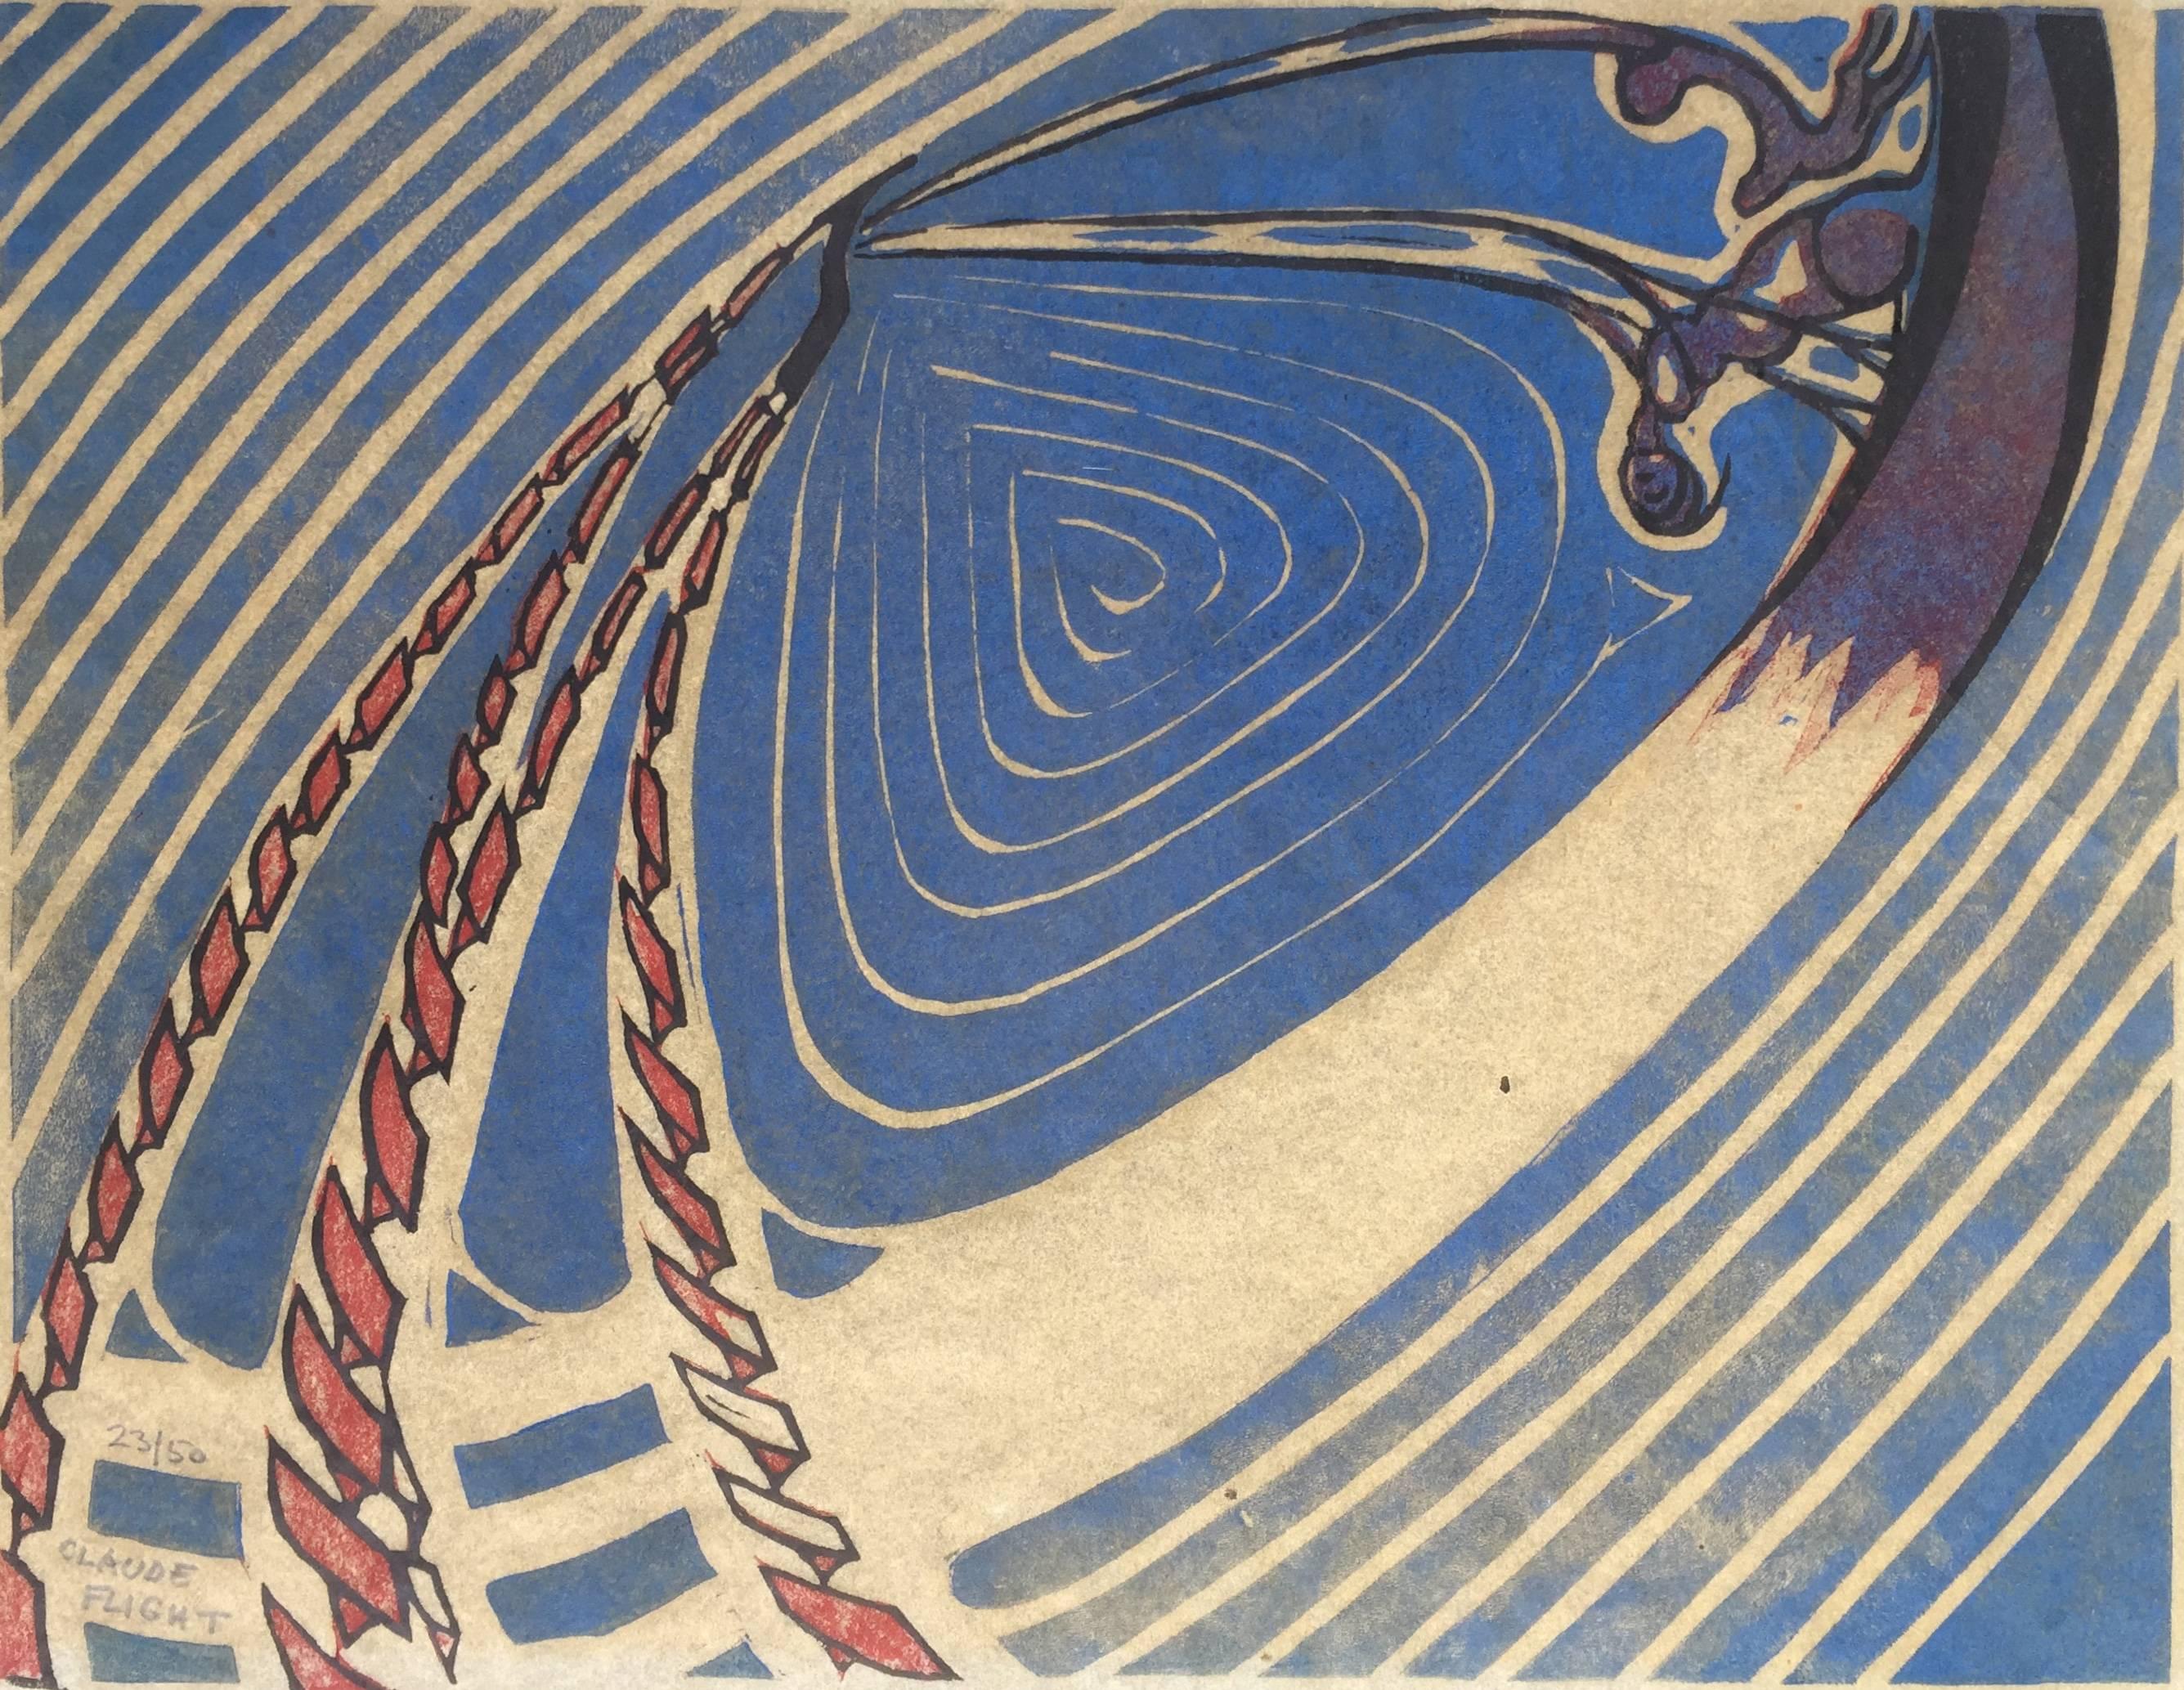 Claude Flight Abstract Print – SCHWUNGBOOTE